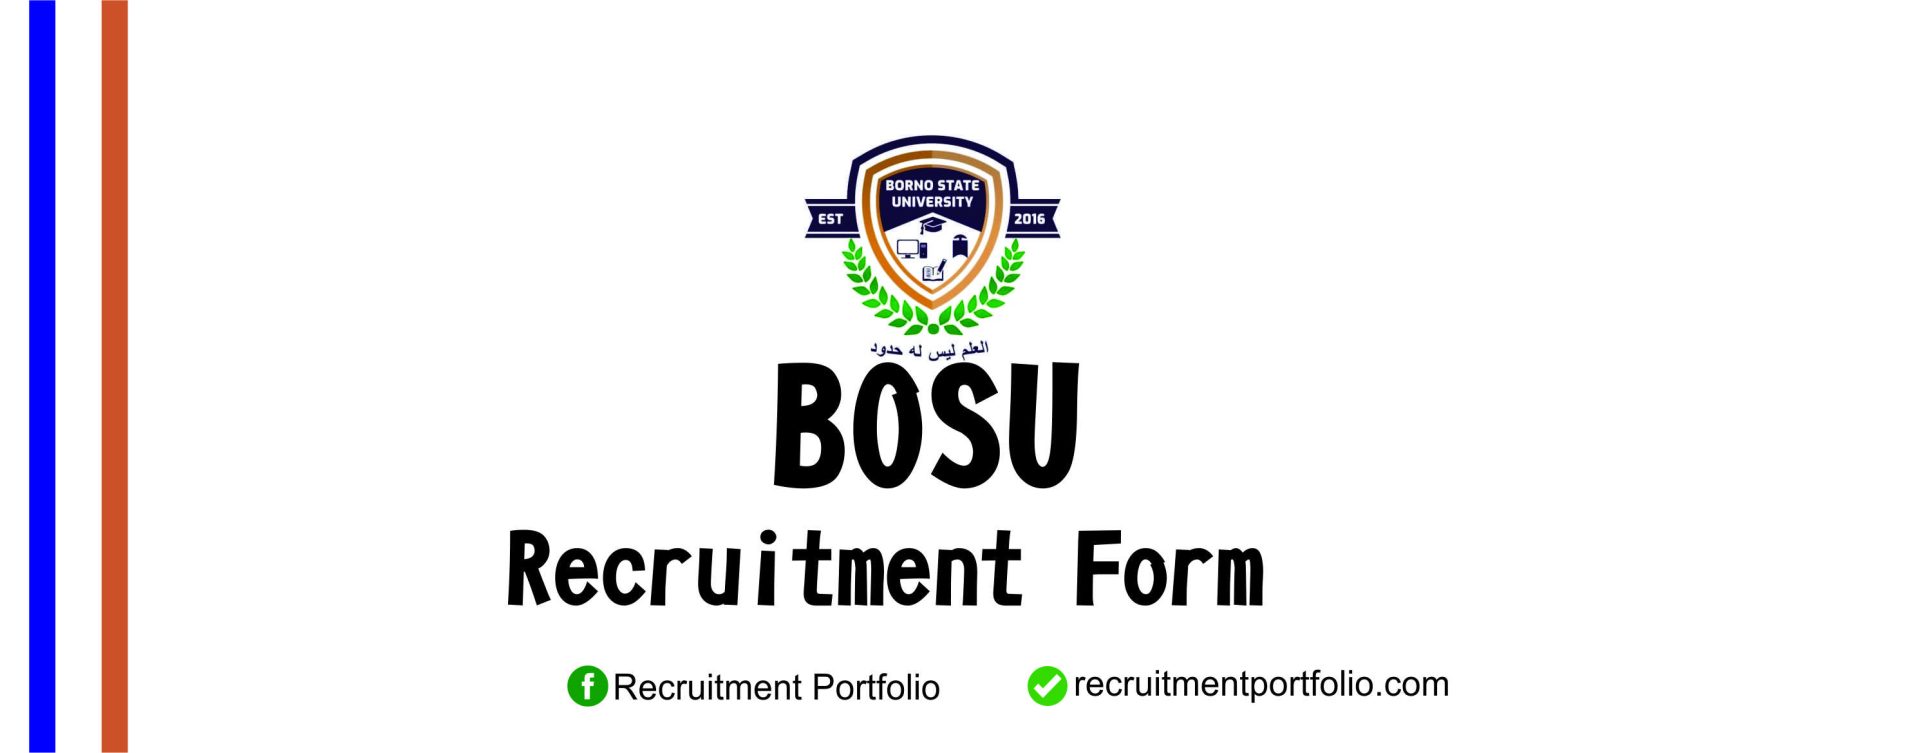 BOSU Recruitment